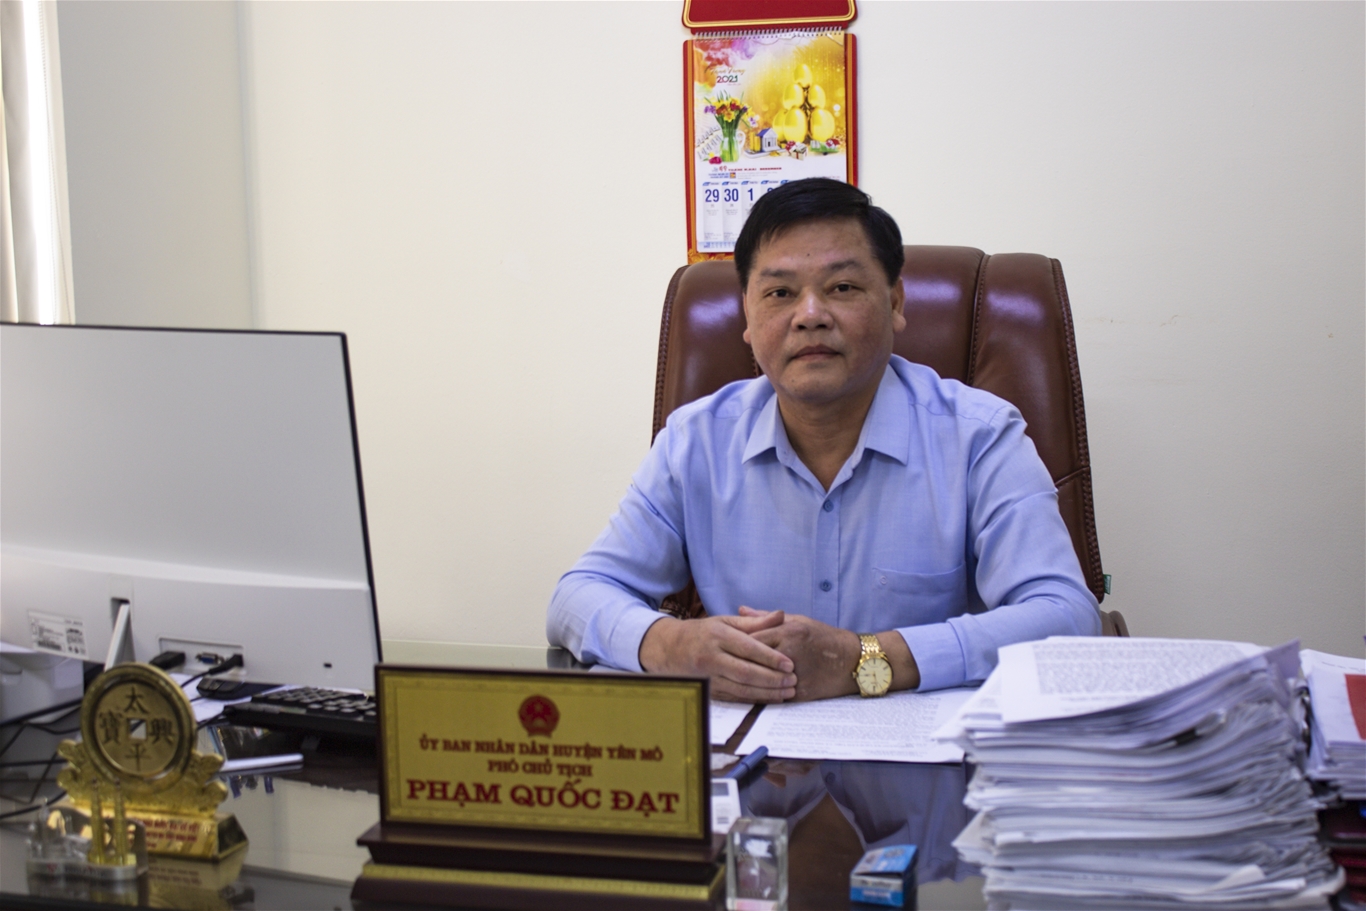 Huyện Yên Mô- tỉnh Ninh Bình: Thành tựu kinh tế xã hội nổi bật và hứa hẹn phát triển bứt phá